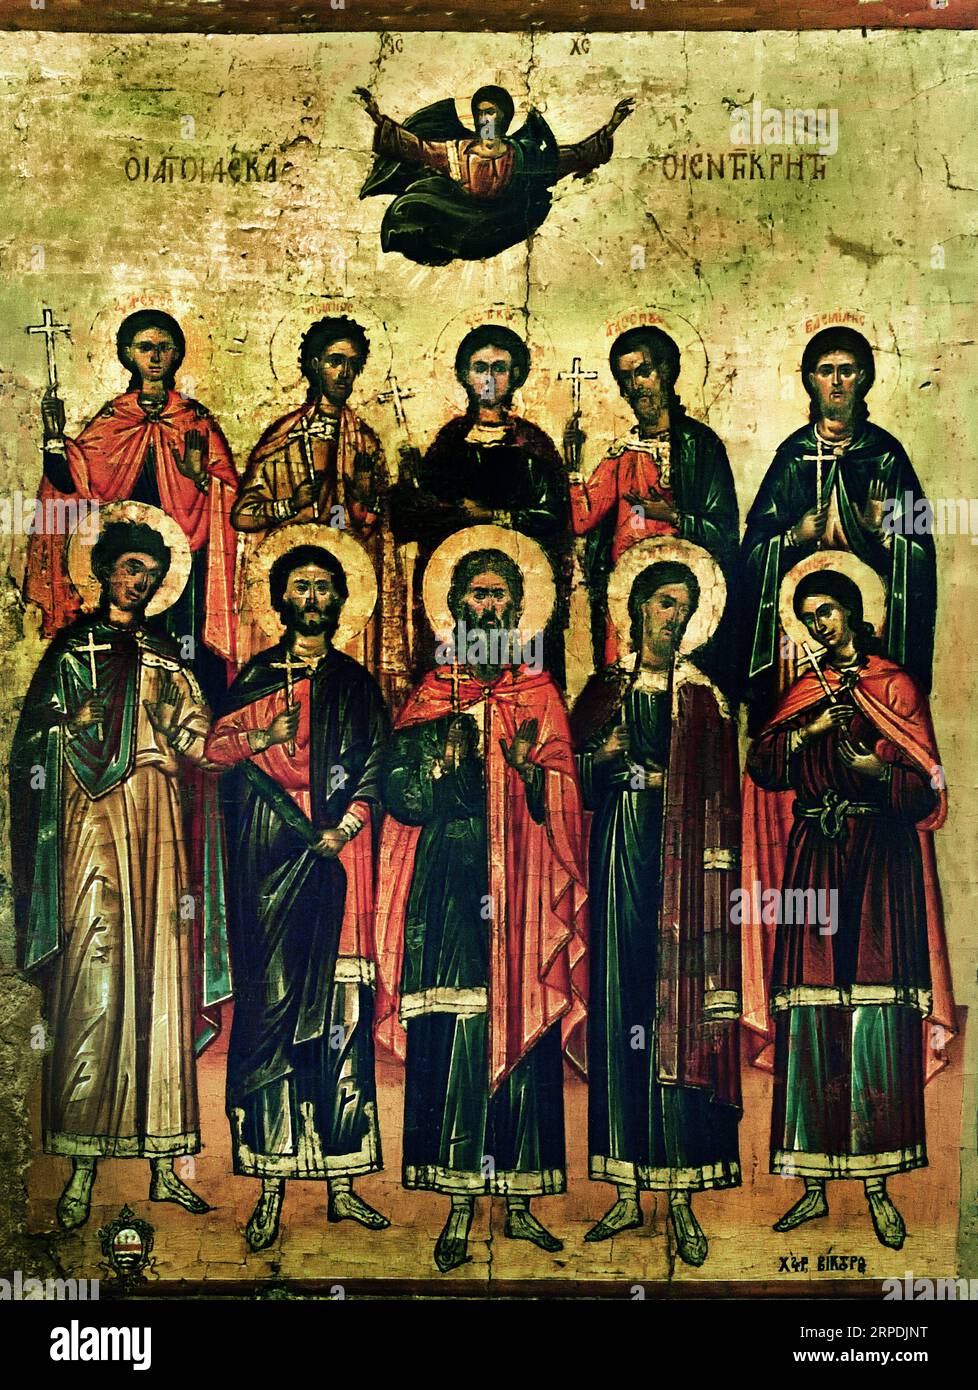 Symbol der Heiligen des Malers Viktor Mitte des 17 Jahrhunderts Athen Griechenland Byzantinisches Museum Orthodoxe Kirche Griechisch ( icon ) Stockfoto